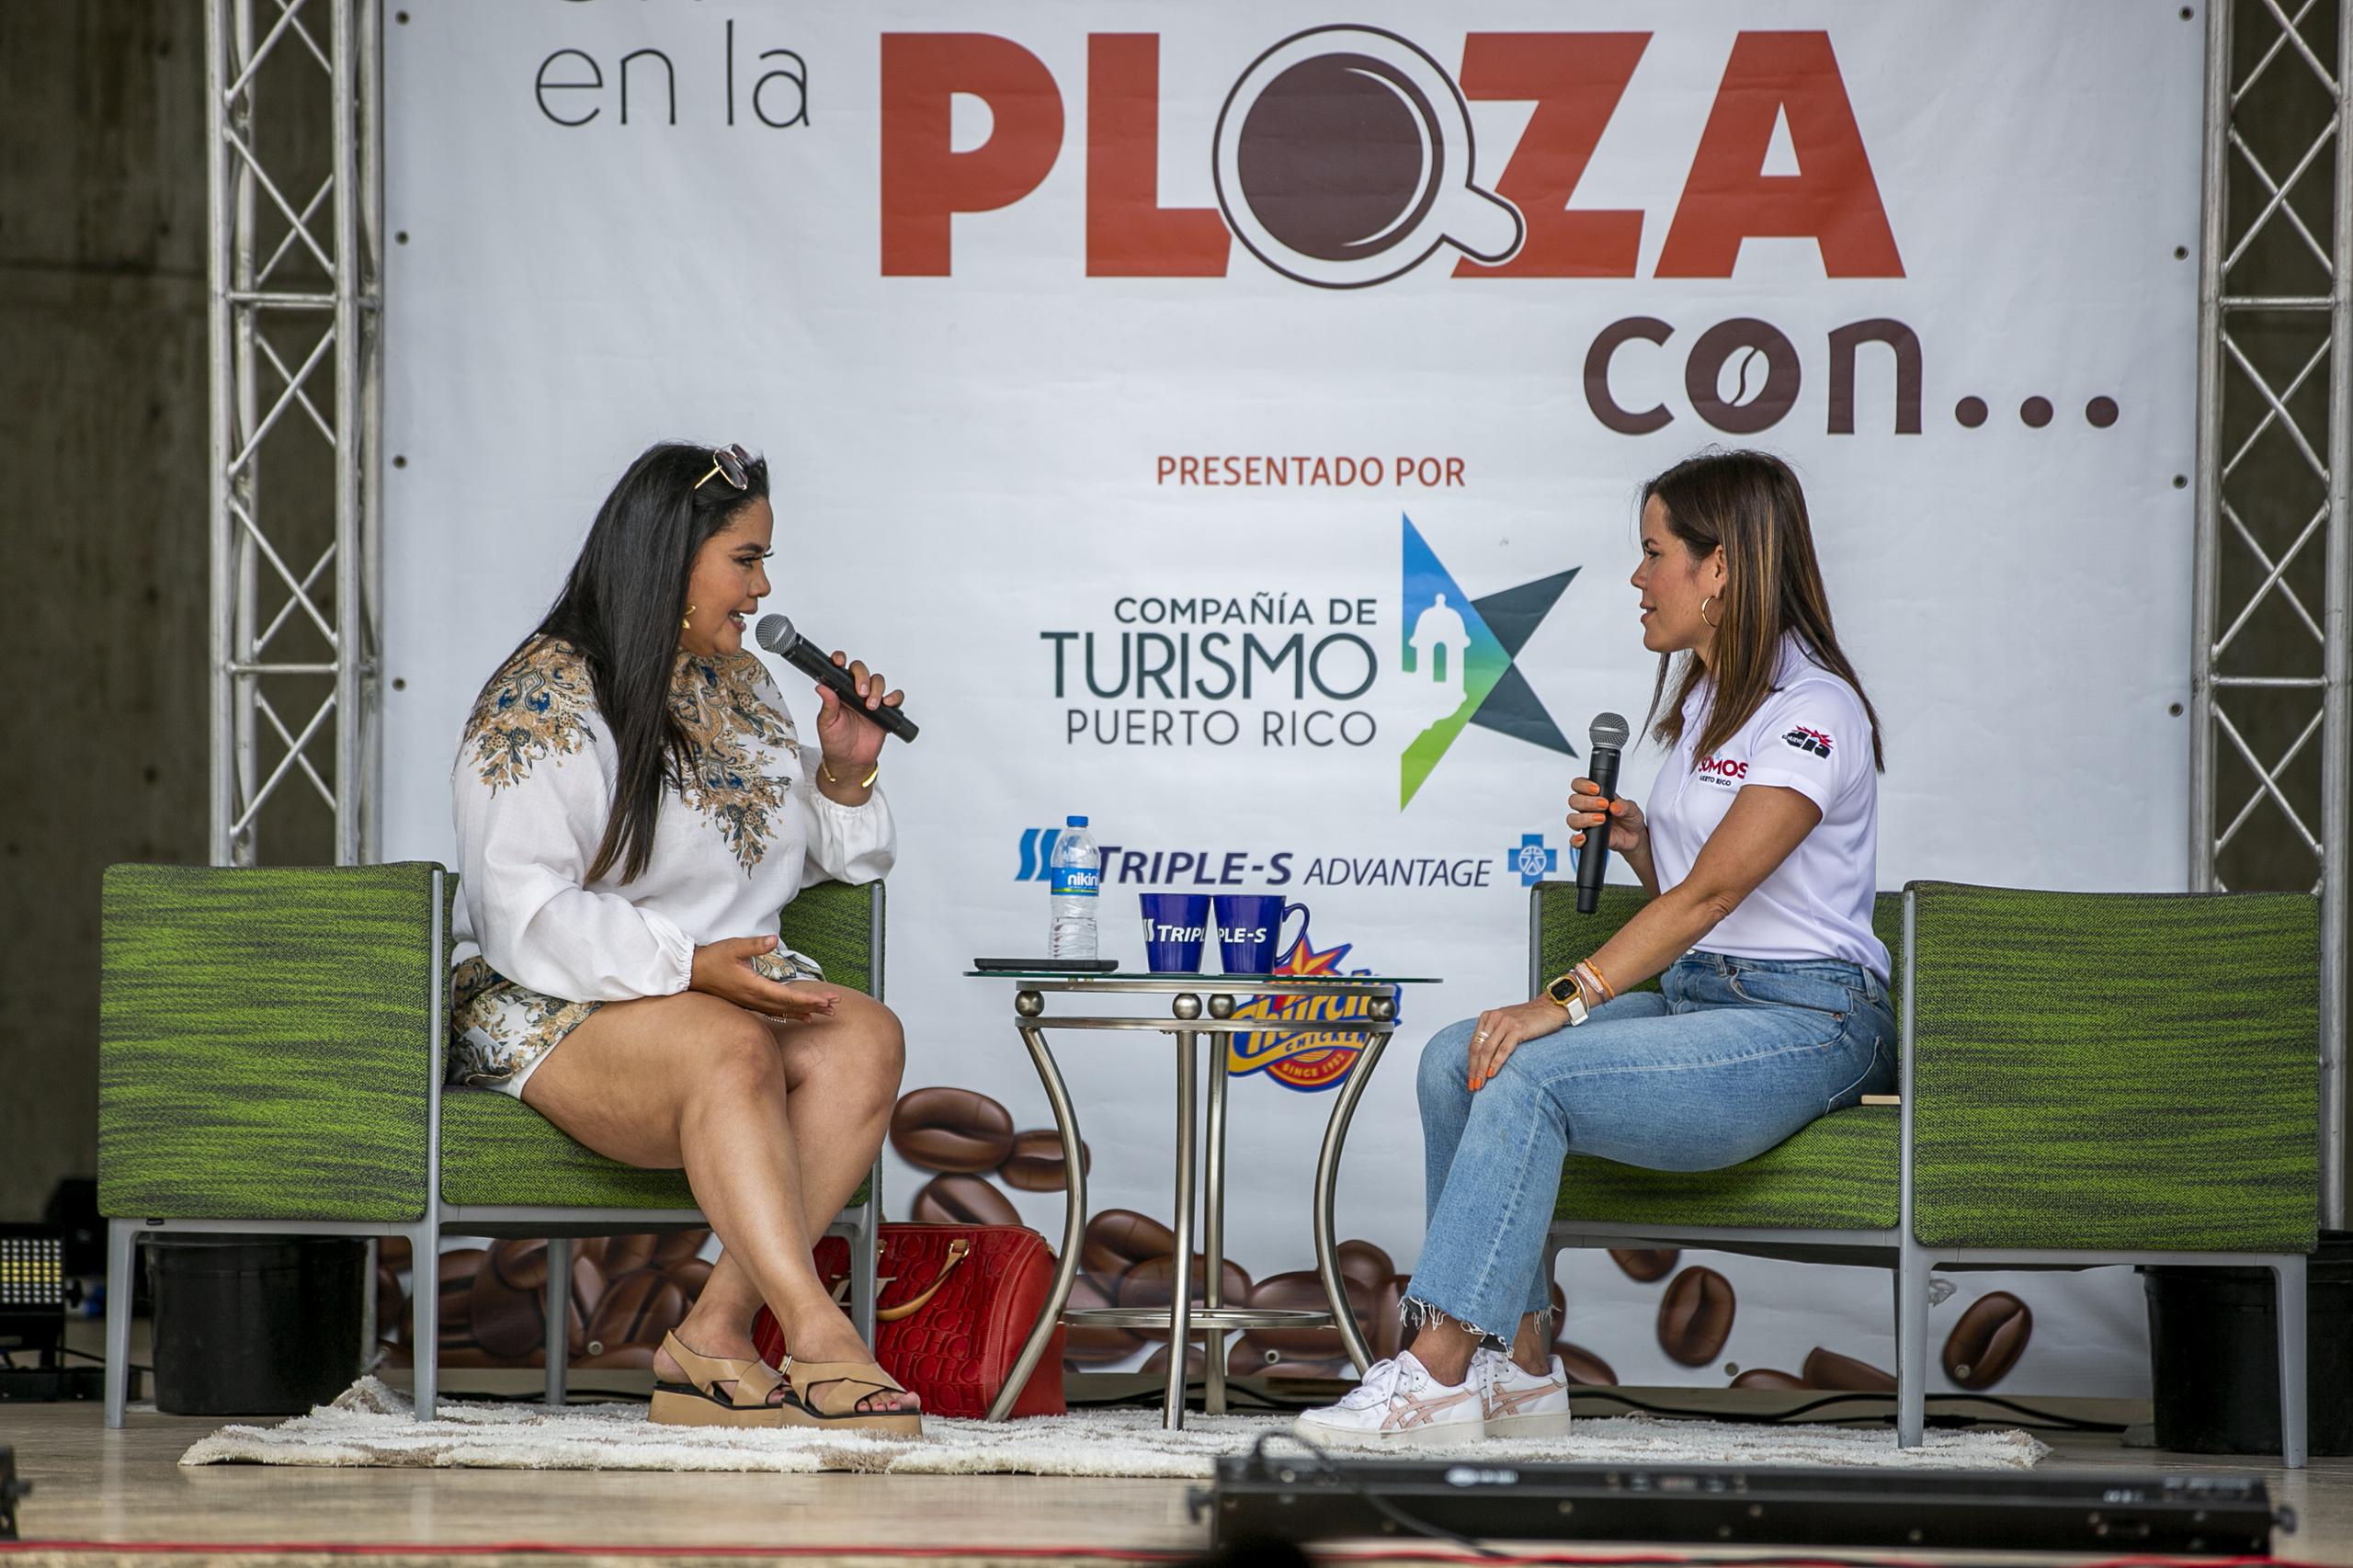 La reportera de GFR Media, Rosalina Marrero (derecha), conversó con la periodista viequense Byankah Soba (izquierda), en el segmento "Un café en la plaza".
